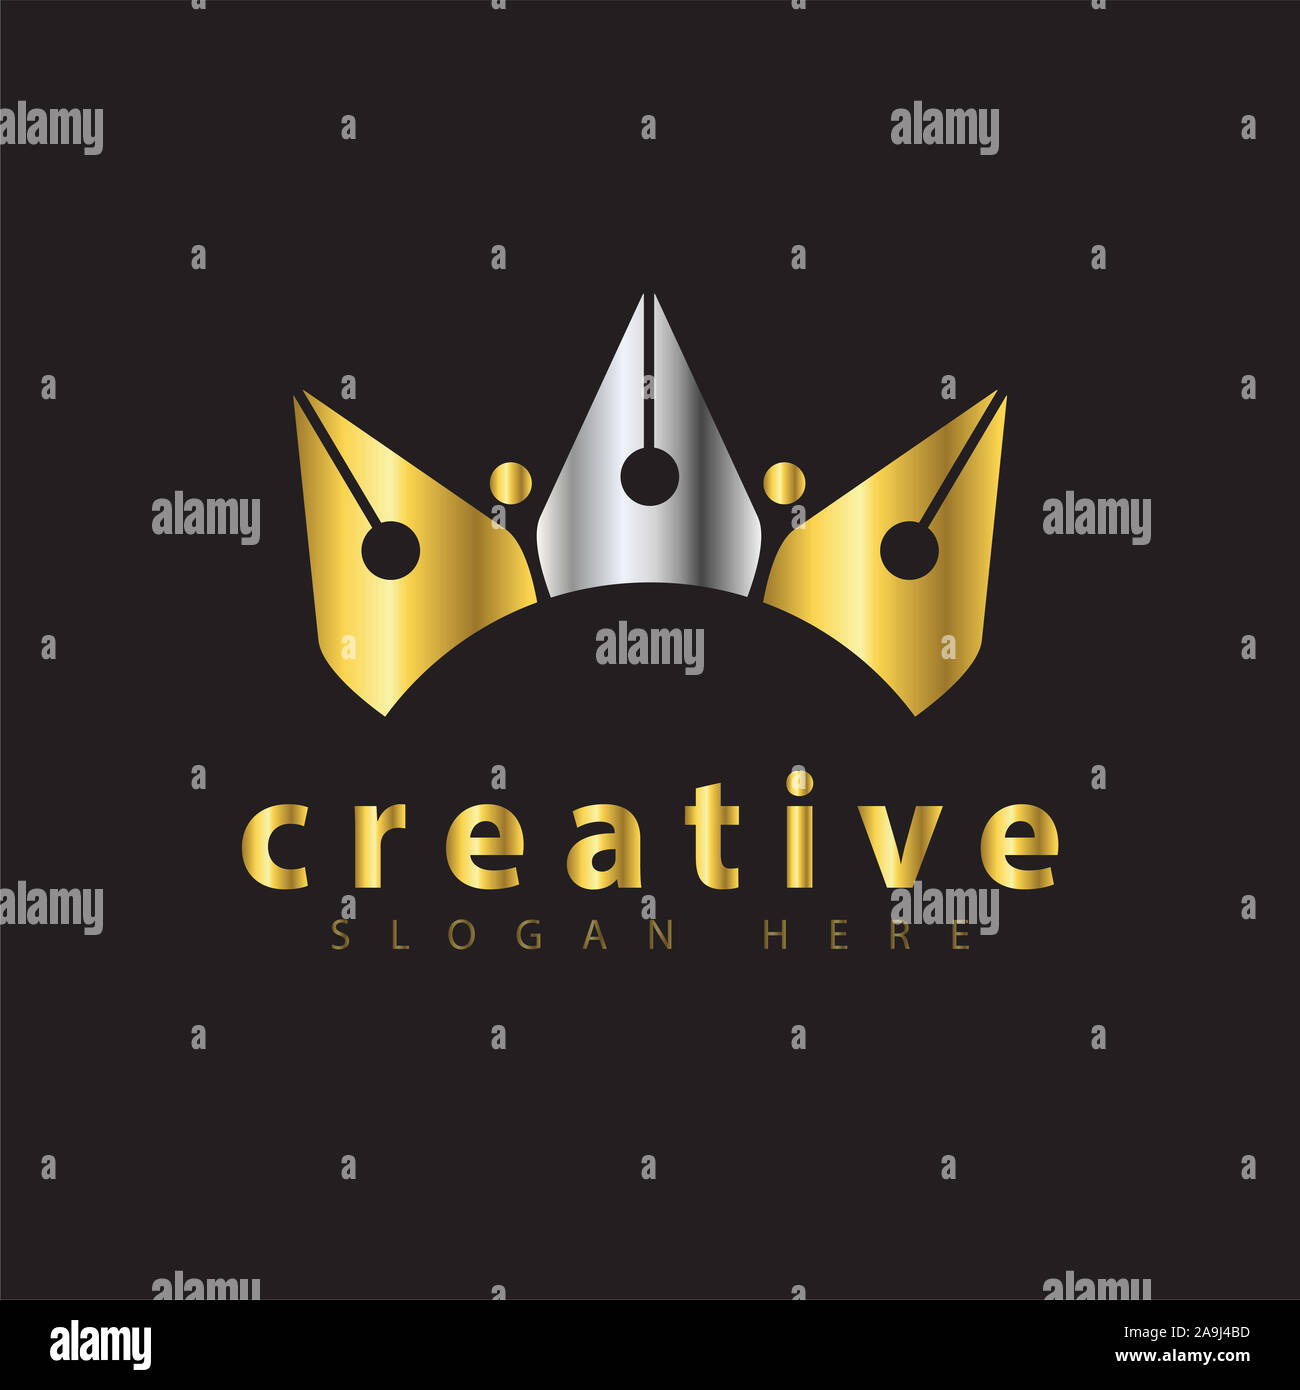 Crown Pen Logo vector Template Stock Photo - Alamy